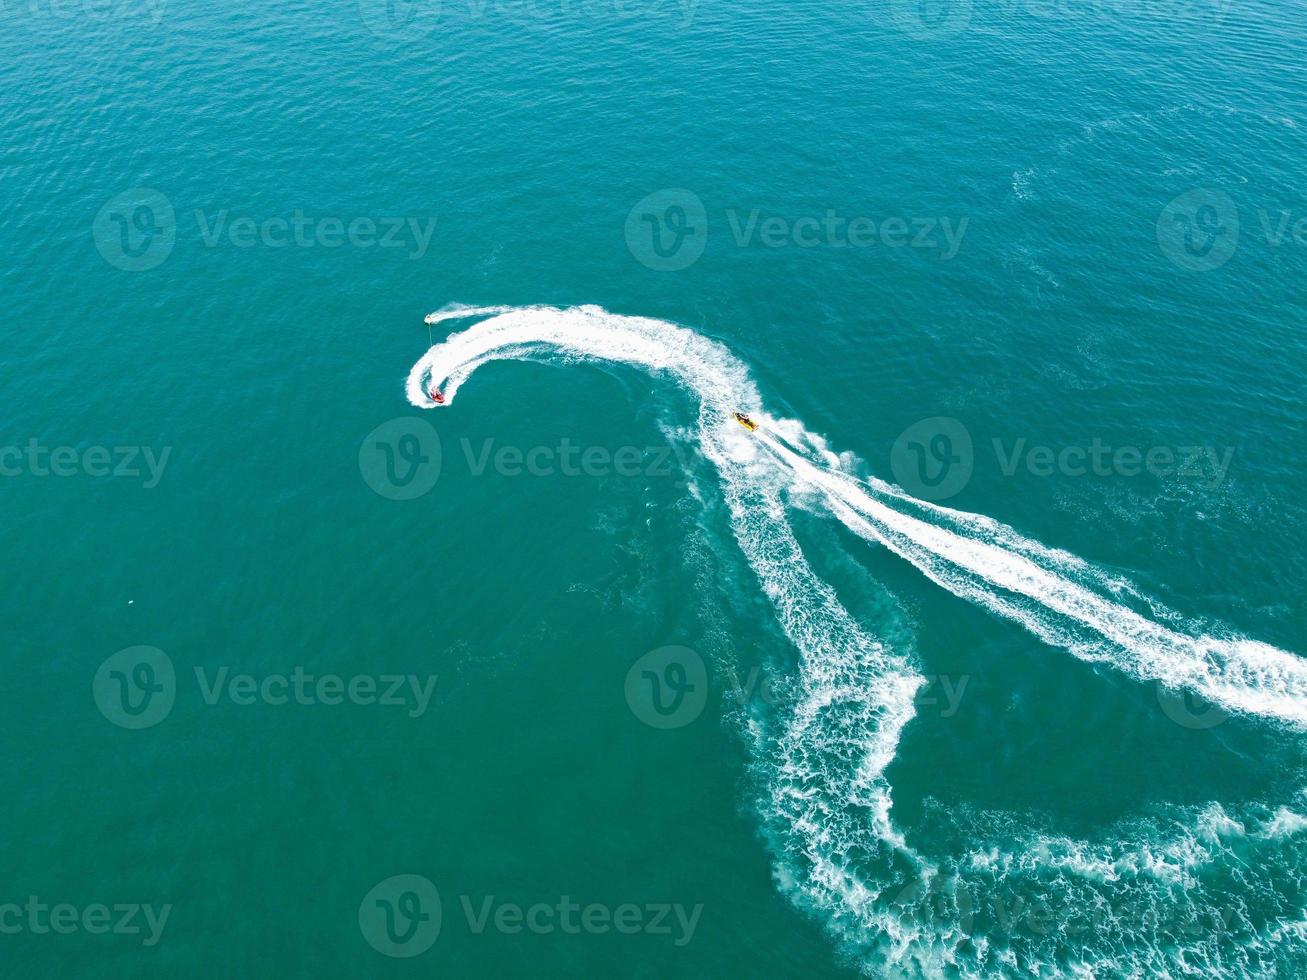 imágenes de alto ángulo y vista aérea del océano con botes de alta velocidad, la gente se divierte y disfruta del clima más cálido en la playa de bournemouth, frente al mar en inglaterra, reino unido. foto